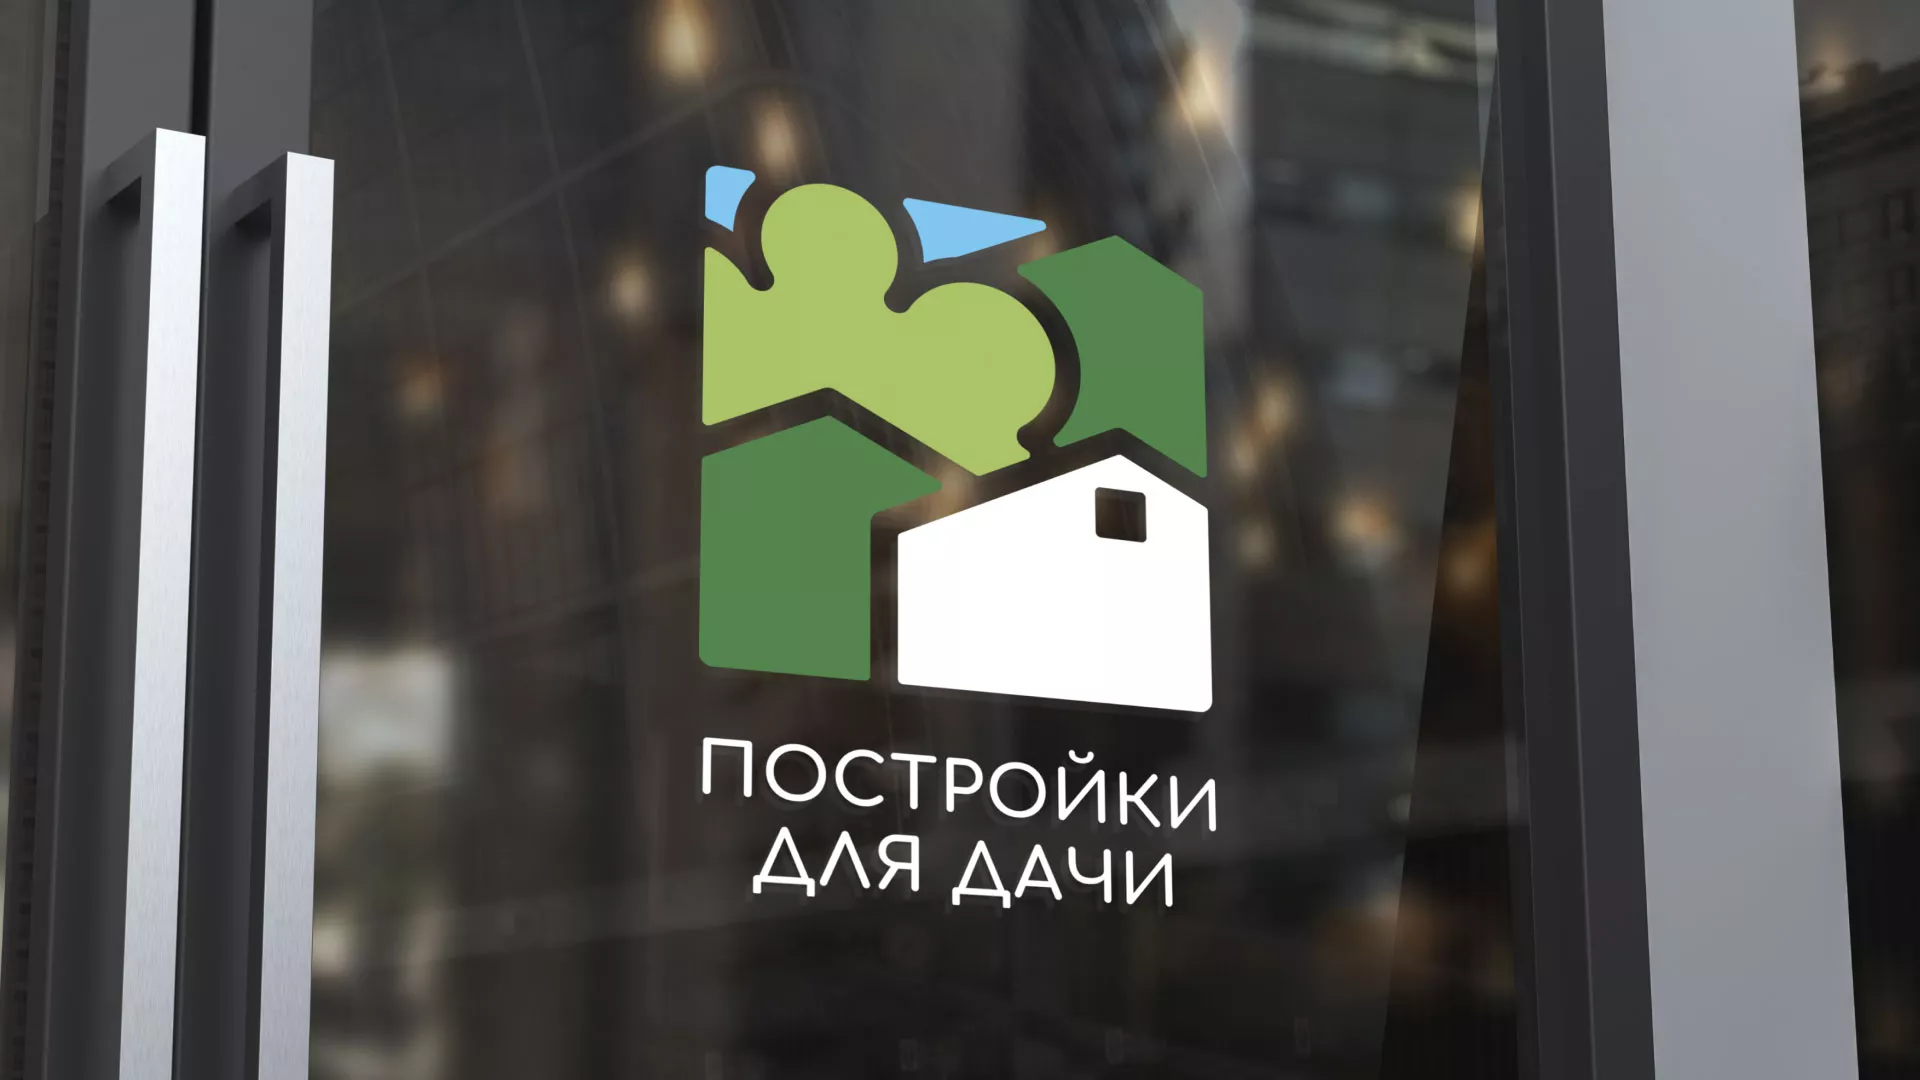 Разработка логотипа в Алагире для компании «Постройки для дачи»